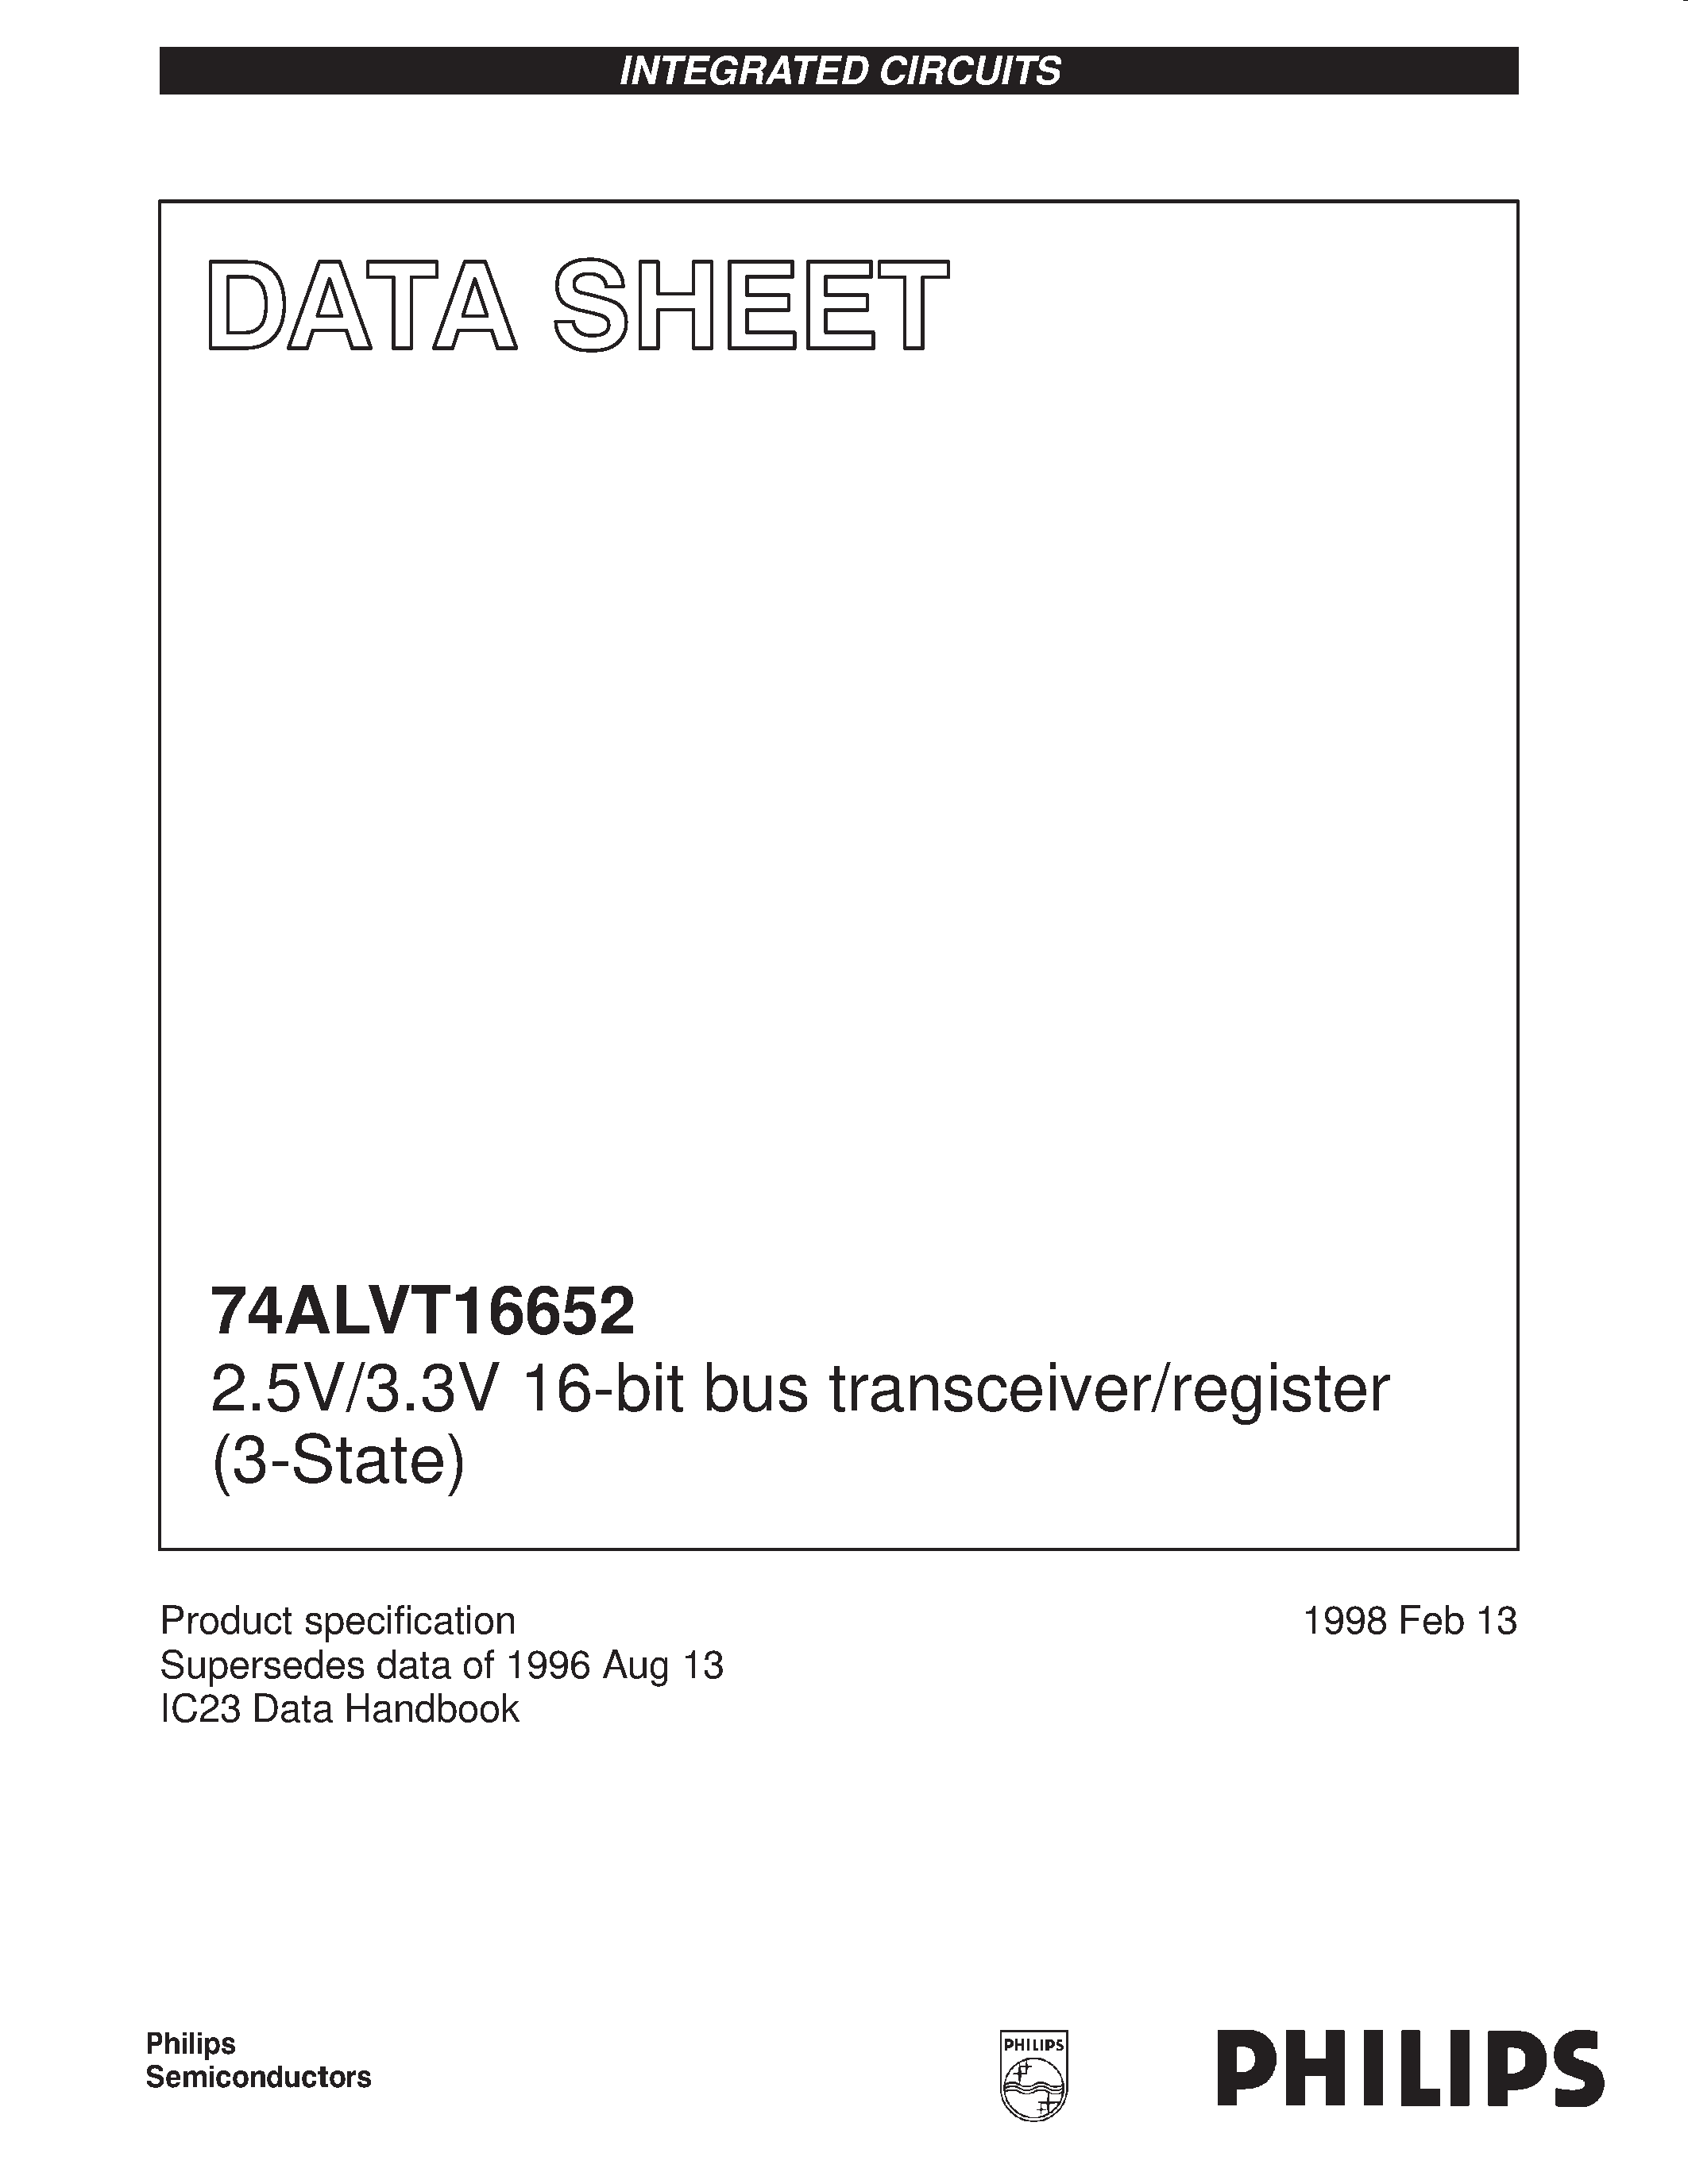 Datasheet 74ALVT16652DL - 2.5V/3.3V 16-bit bus transceiver/register 3-State page 1